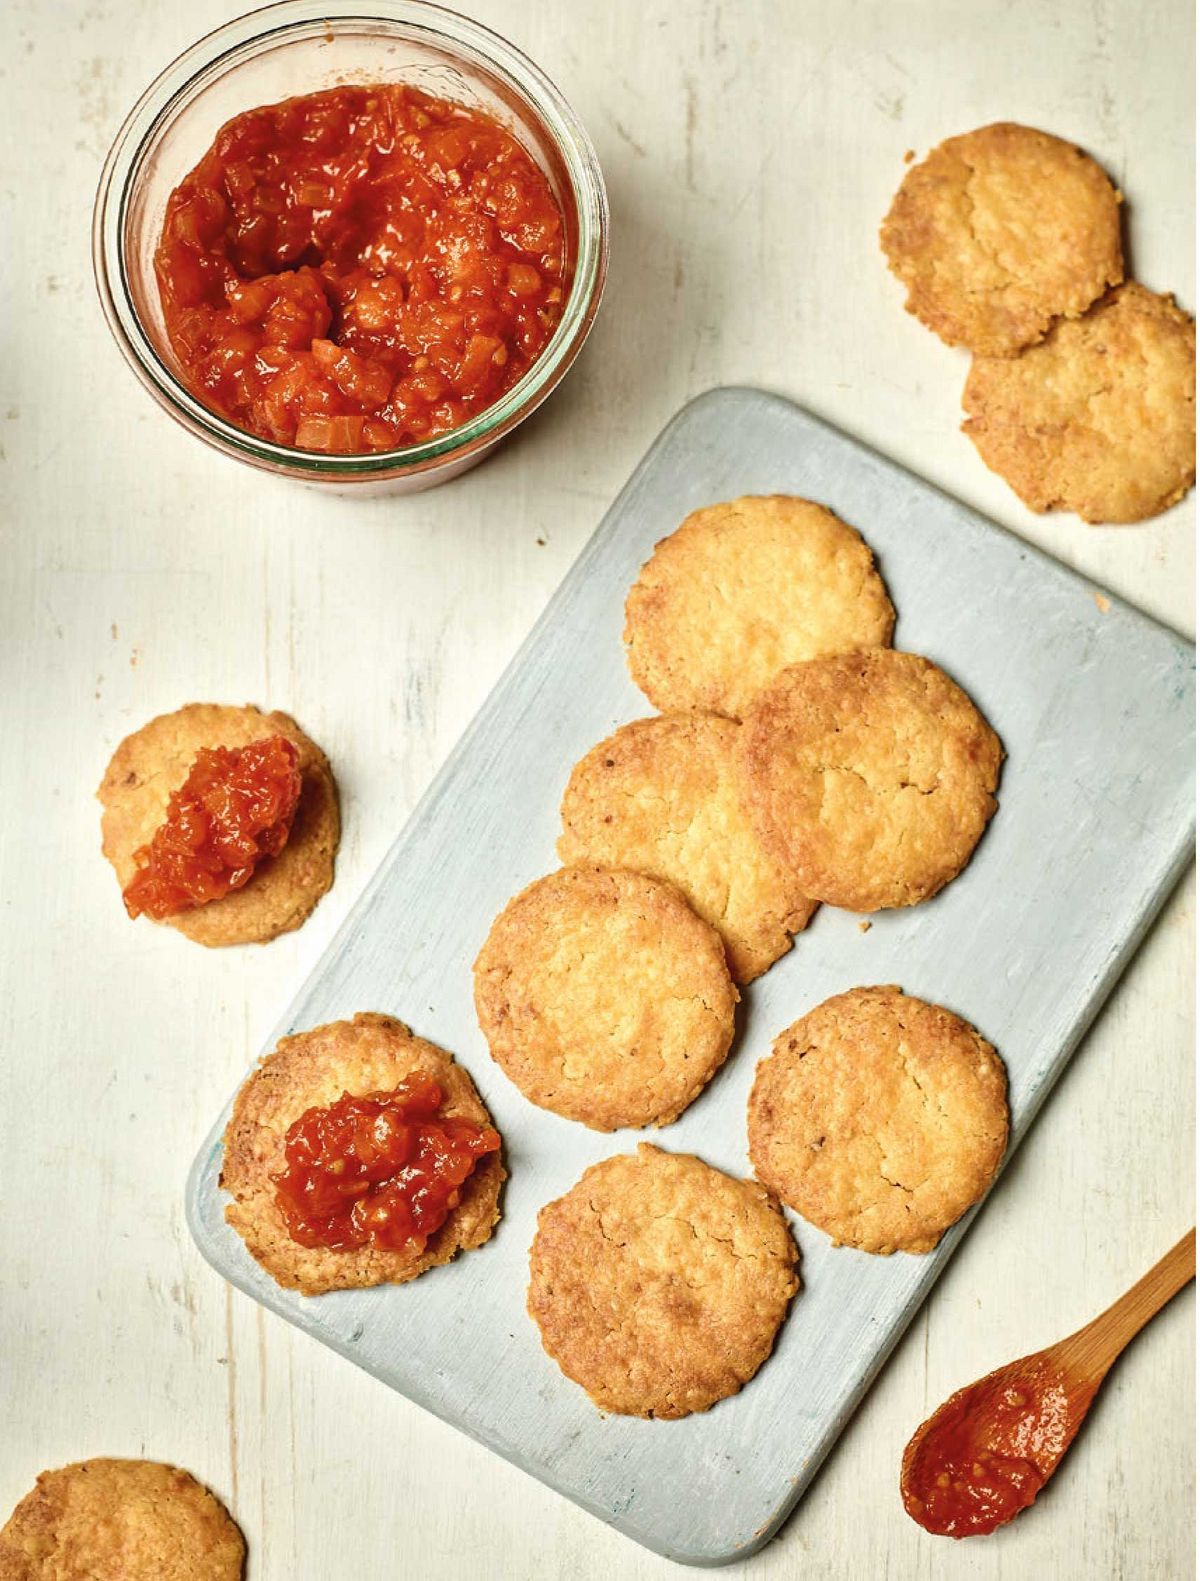 Nadiya Hussain’s Cheese Biscuits with Tomato Jam